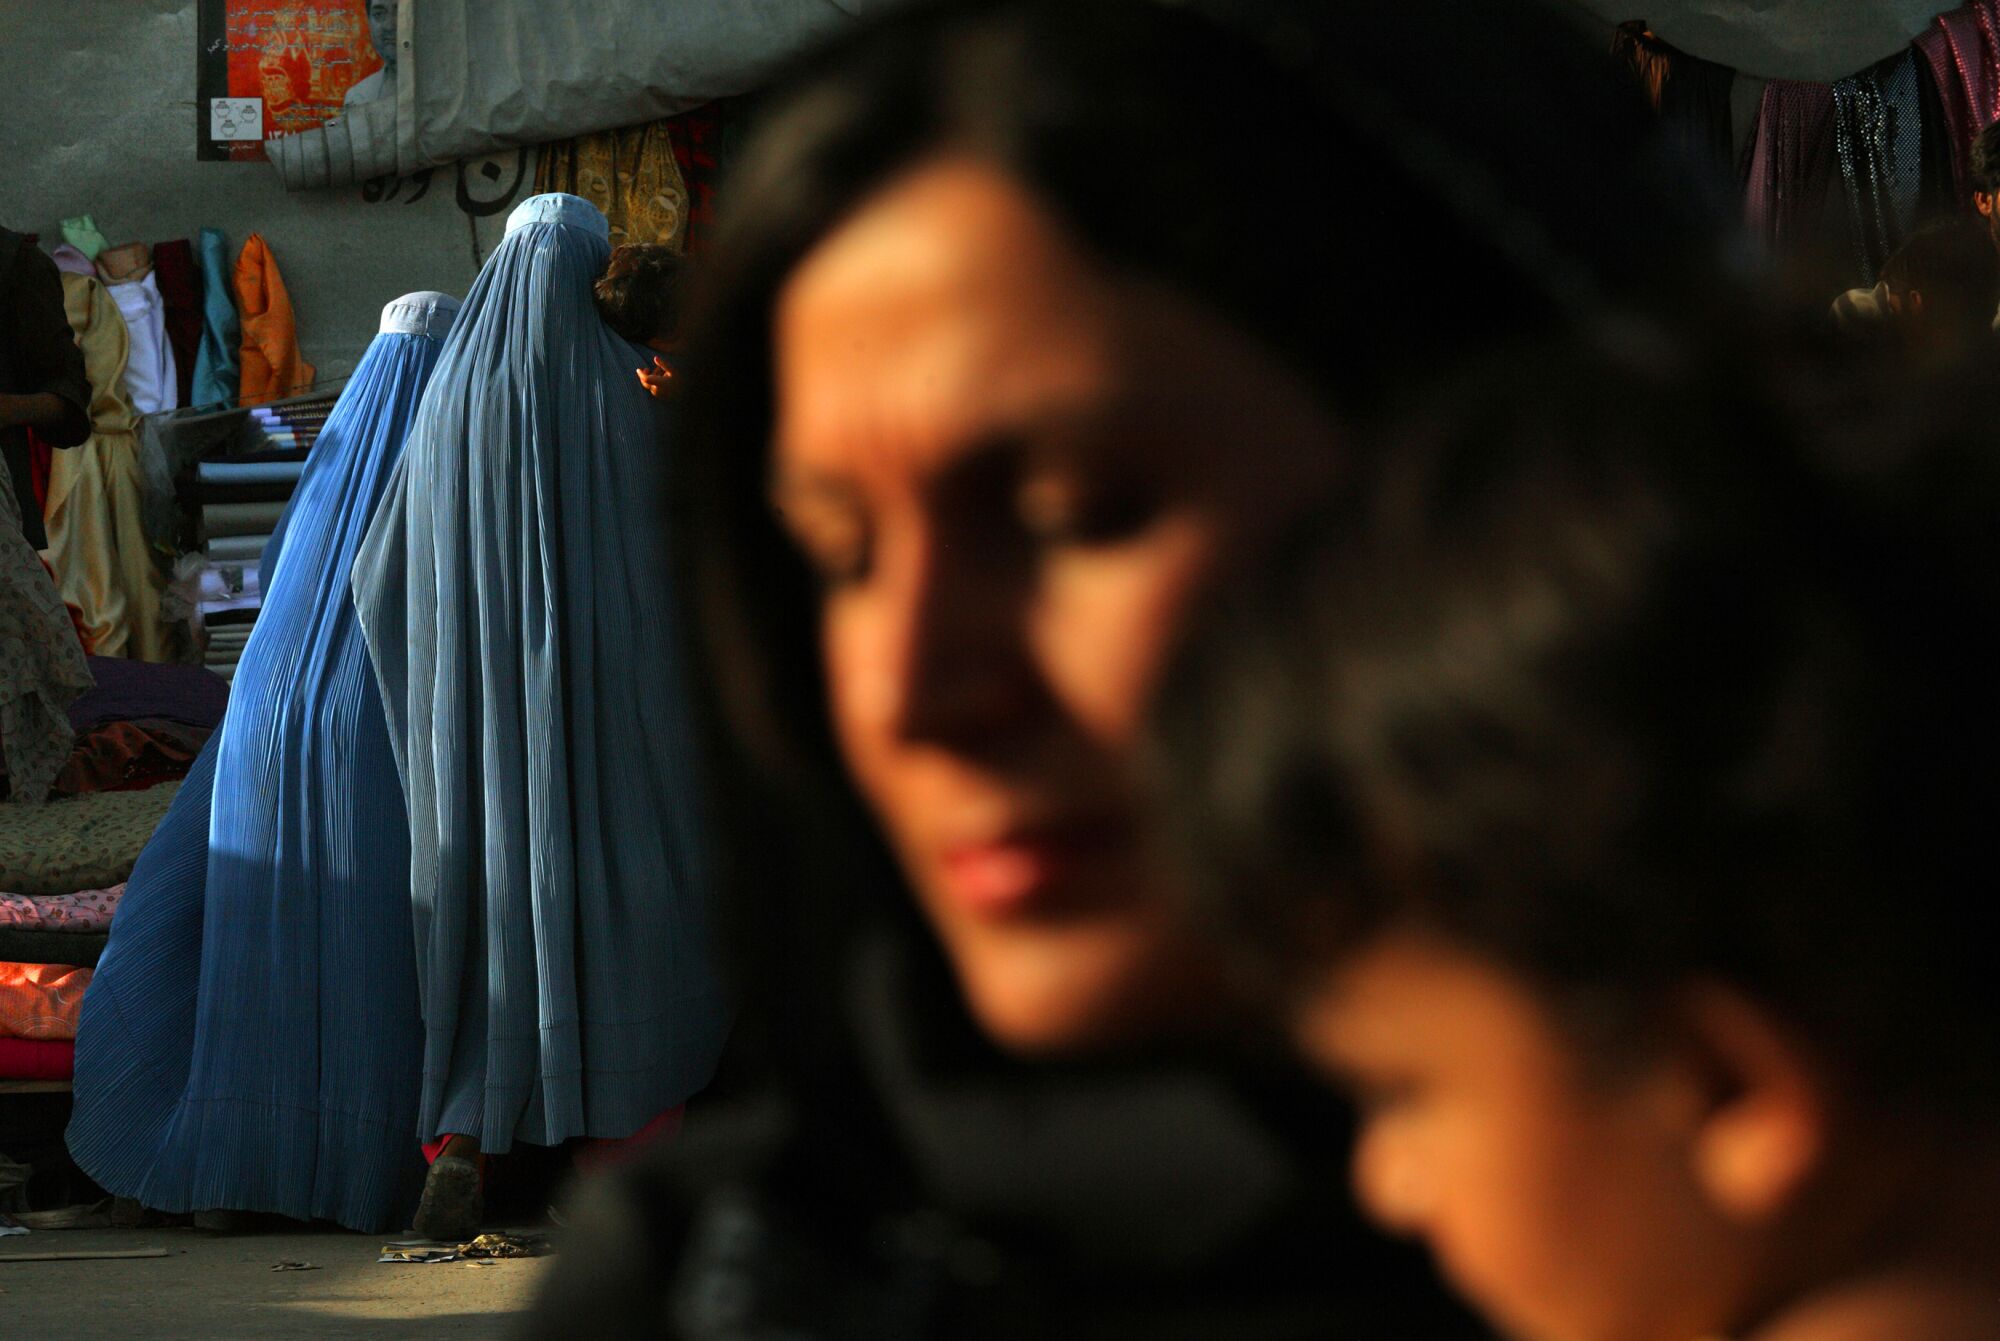 Two women in burqas walk outdoors